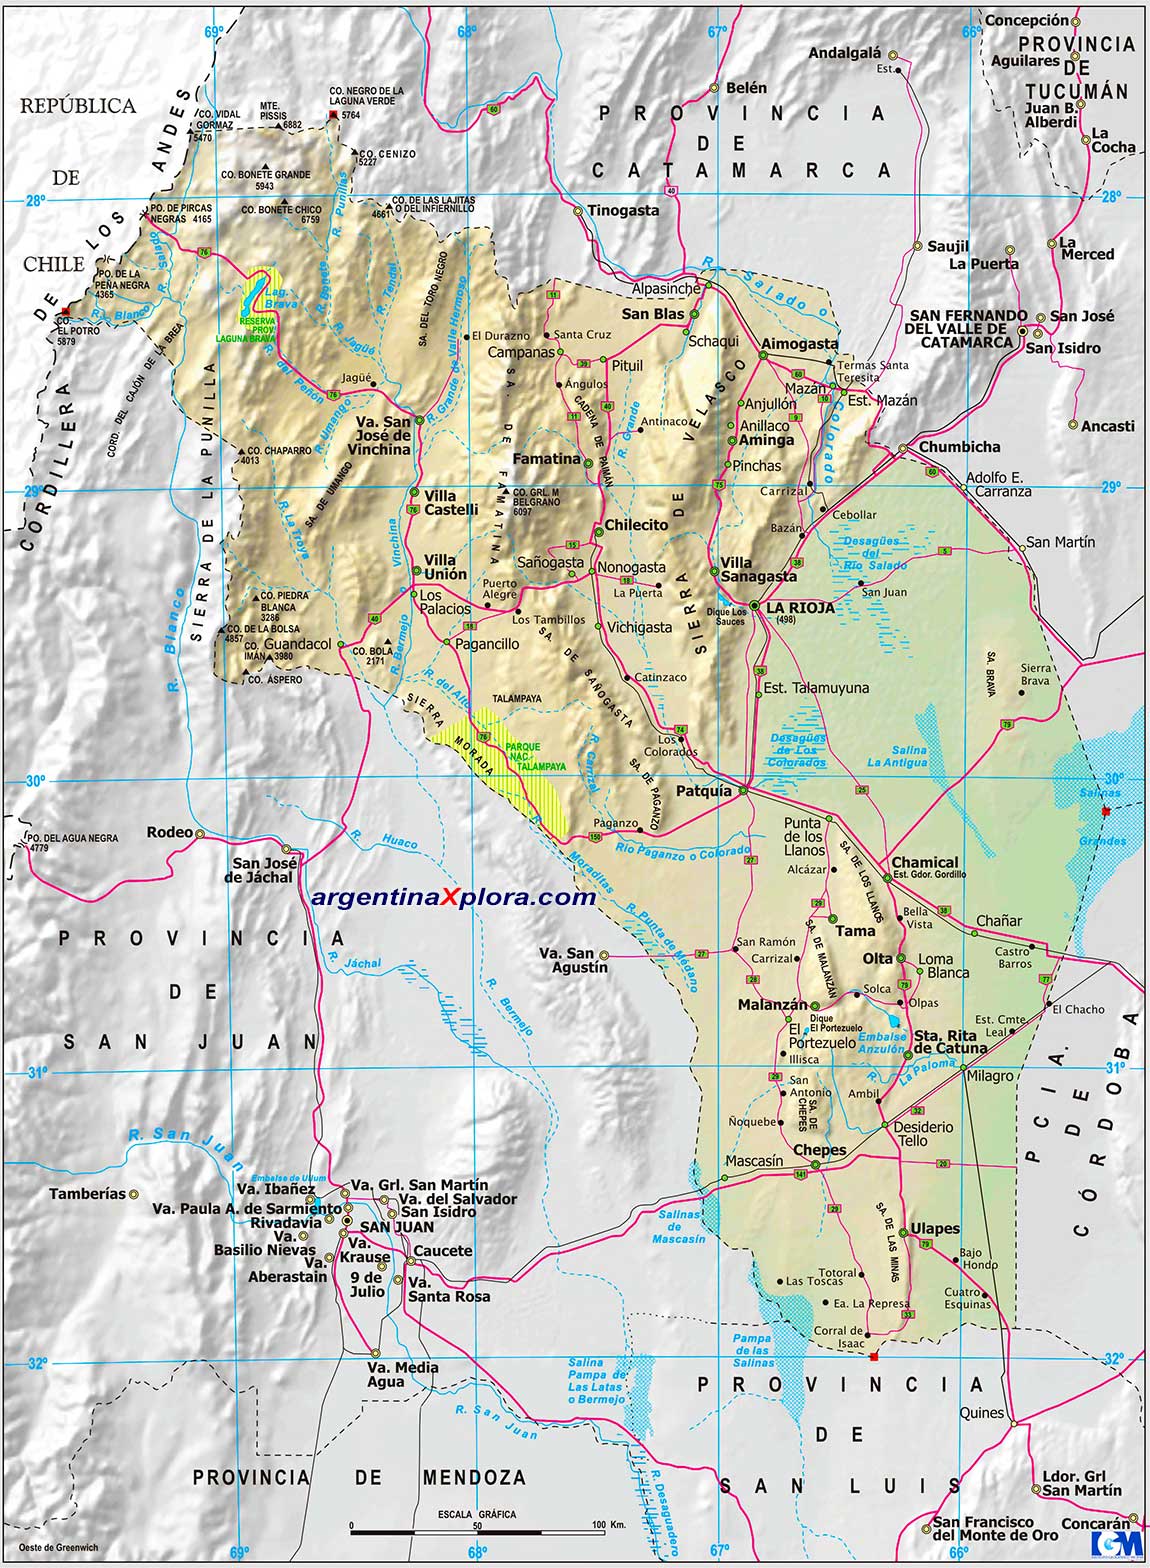 Mapa de la Provincia de La Rioja. Rutas y Localidades. Argentina